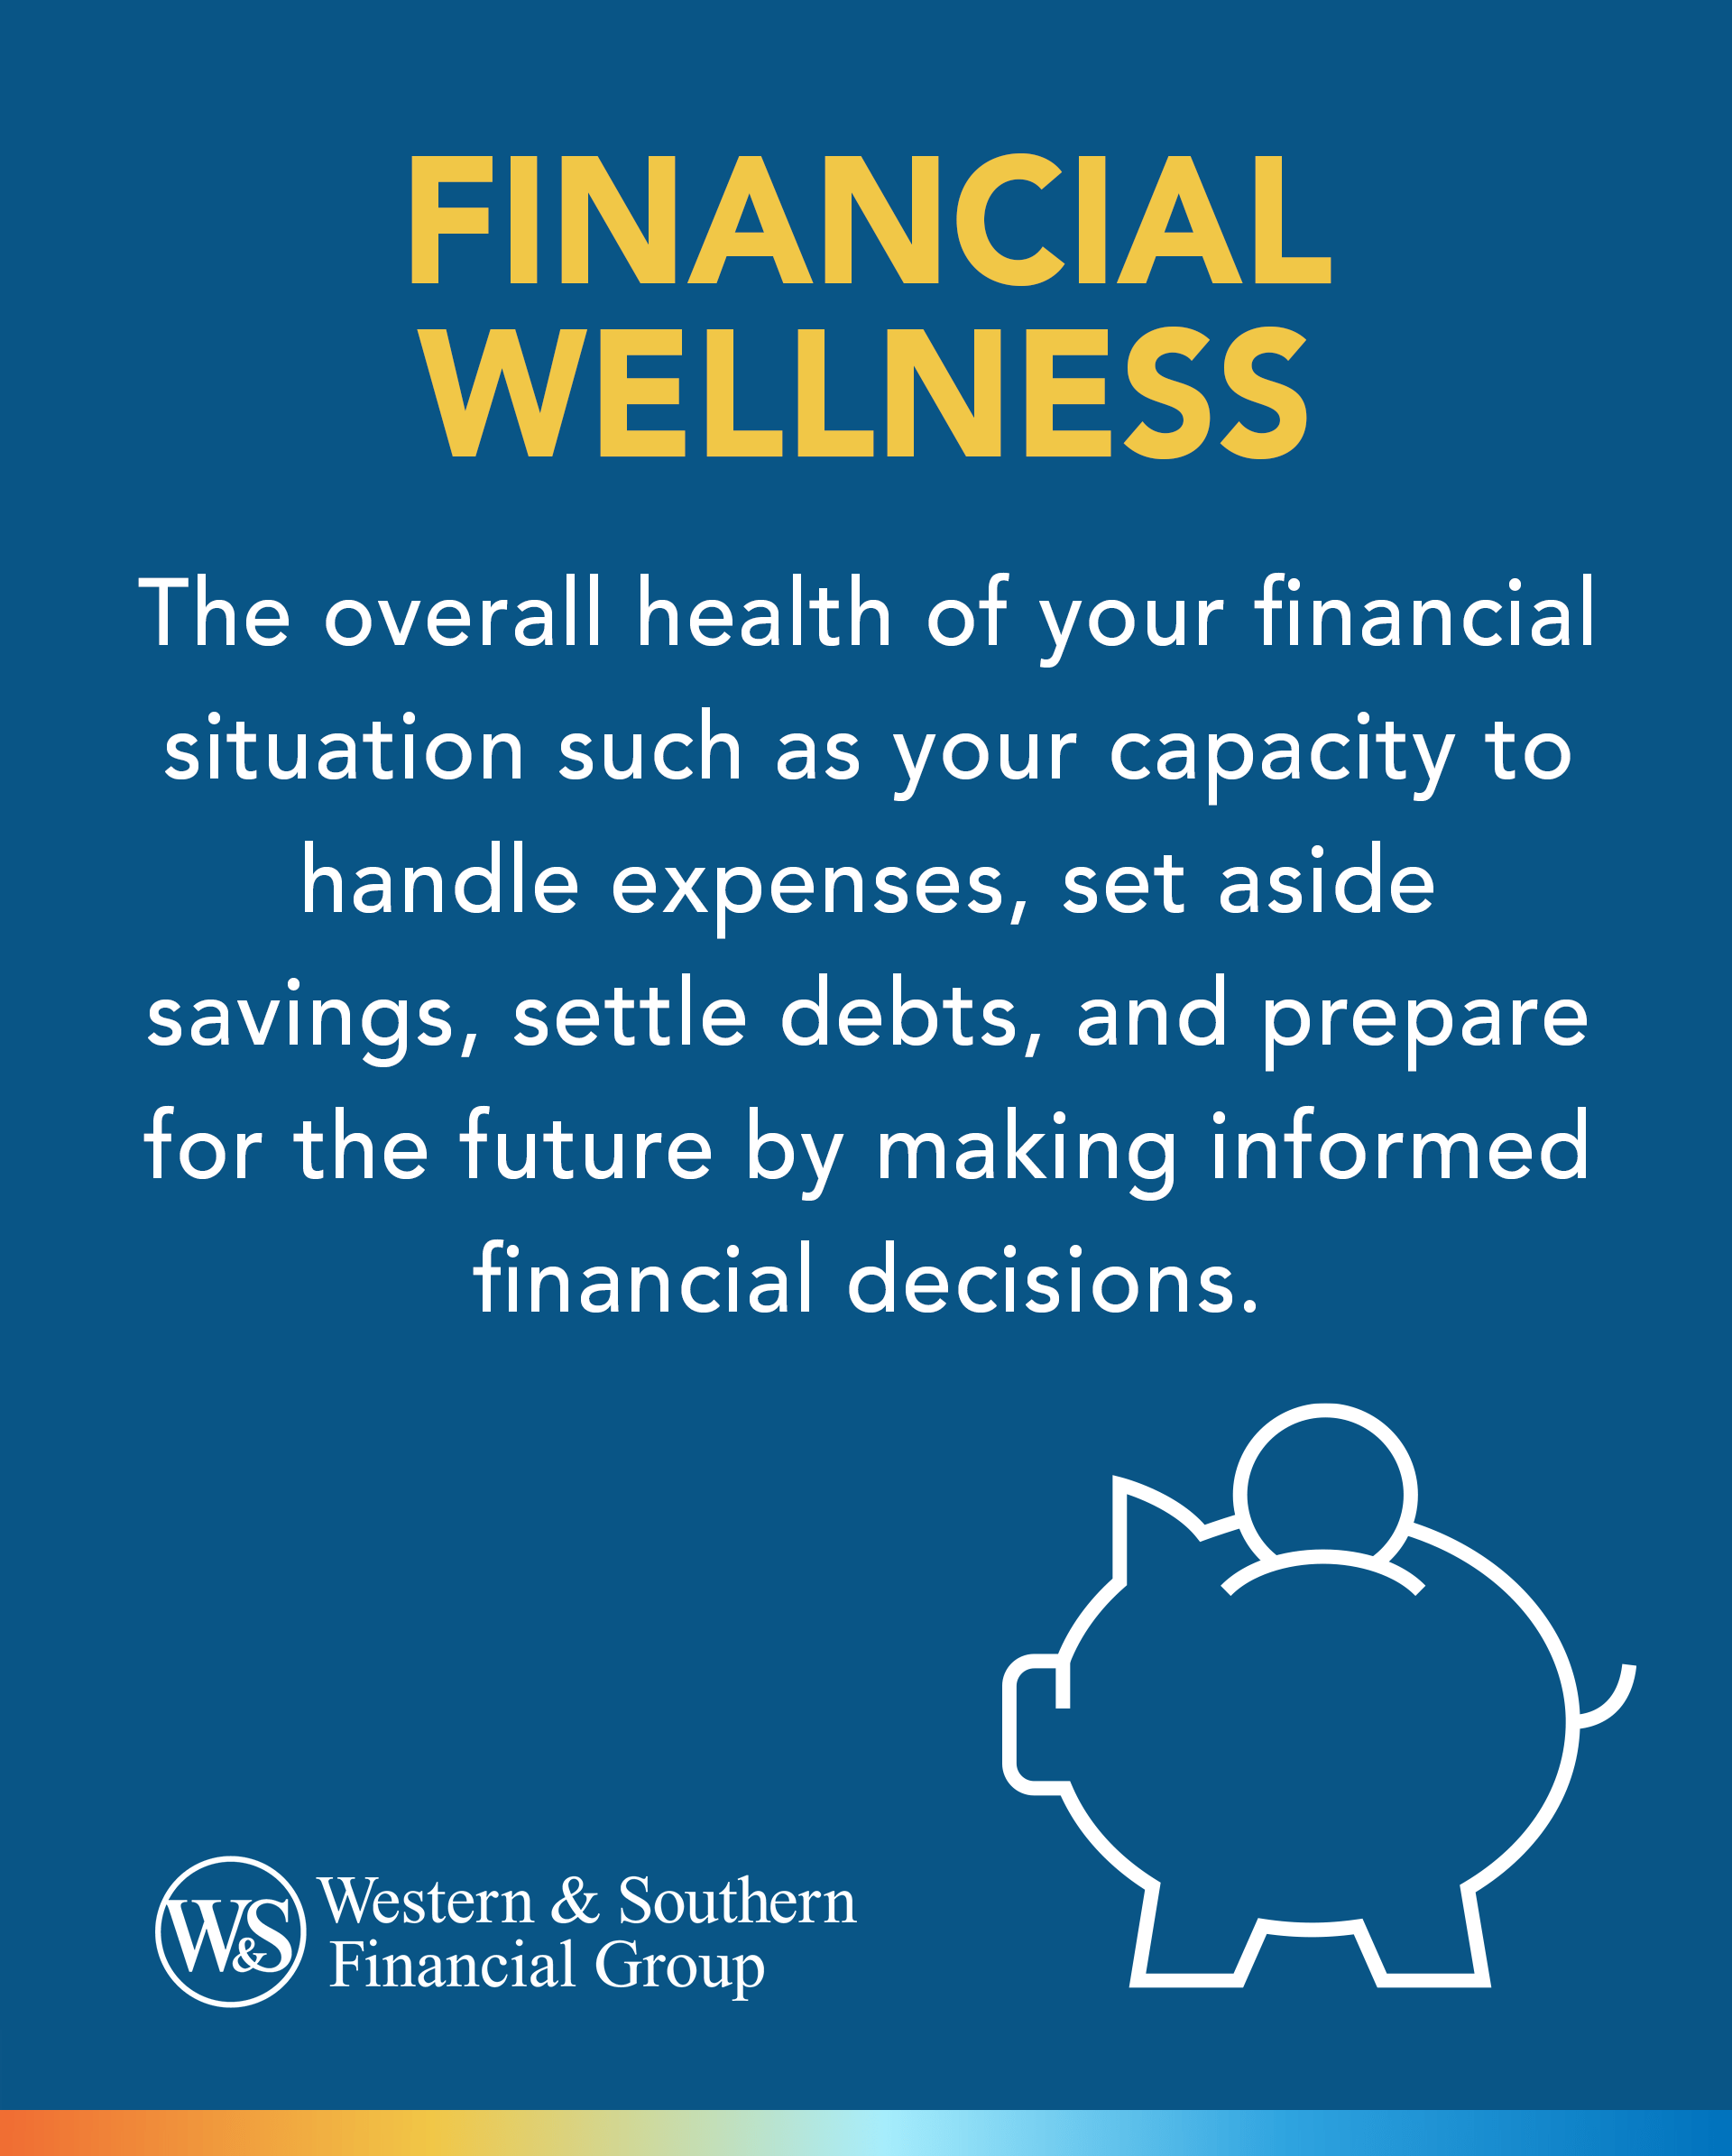 Financial Wellness definition